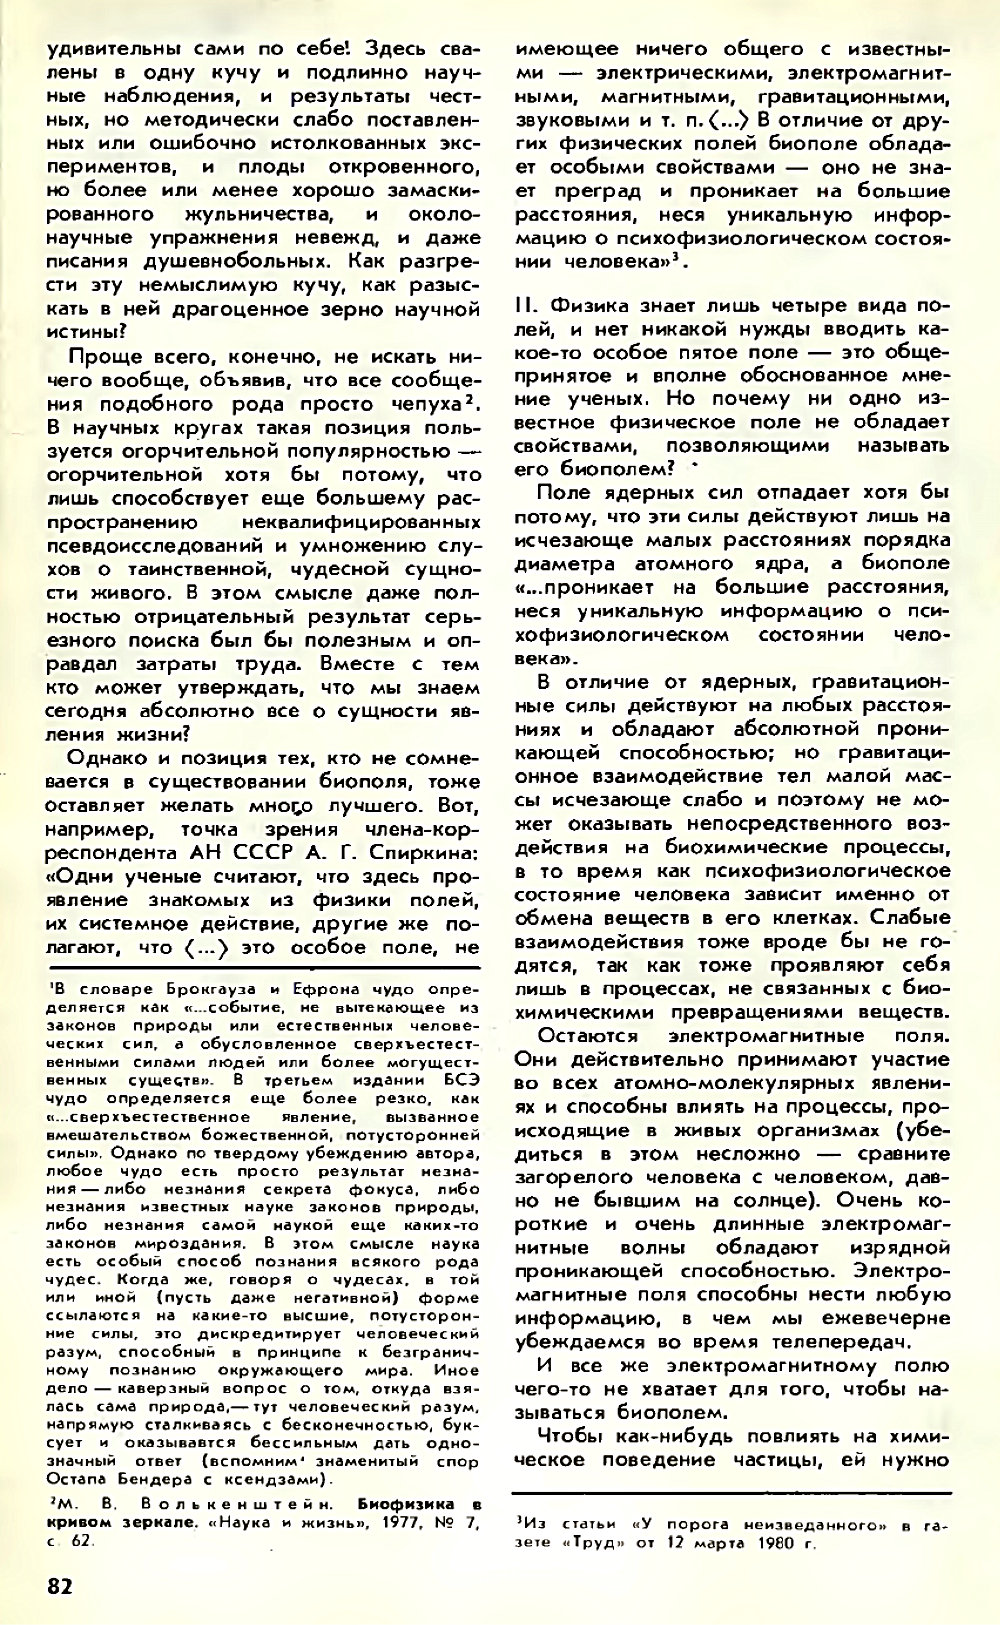 Асимметрия против хаоса, или что такое биополе. В. Жвирблис. Химия и жизнь, 1980, №12, с.81-87. Фотокопия №2